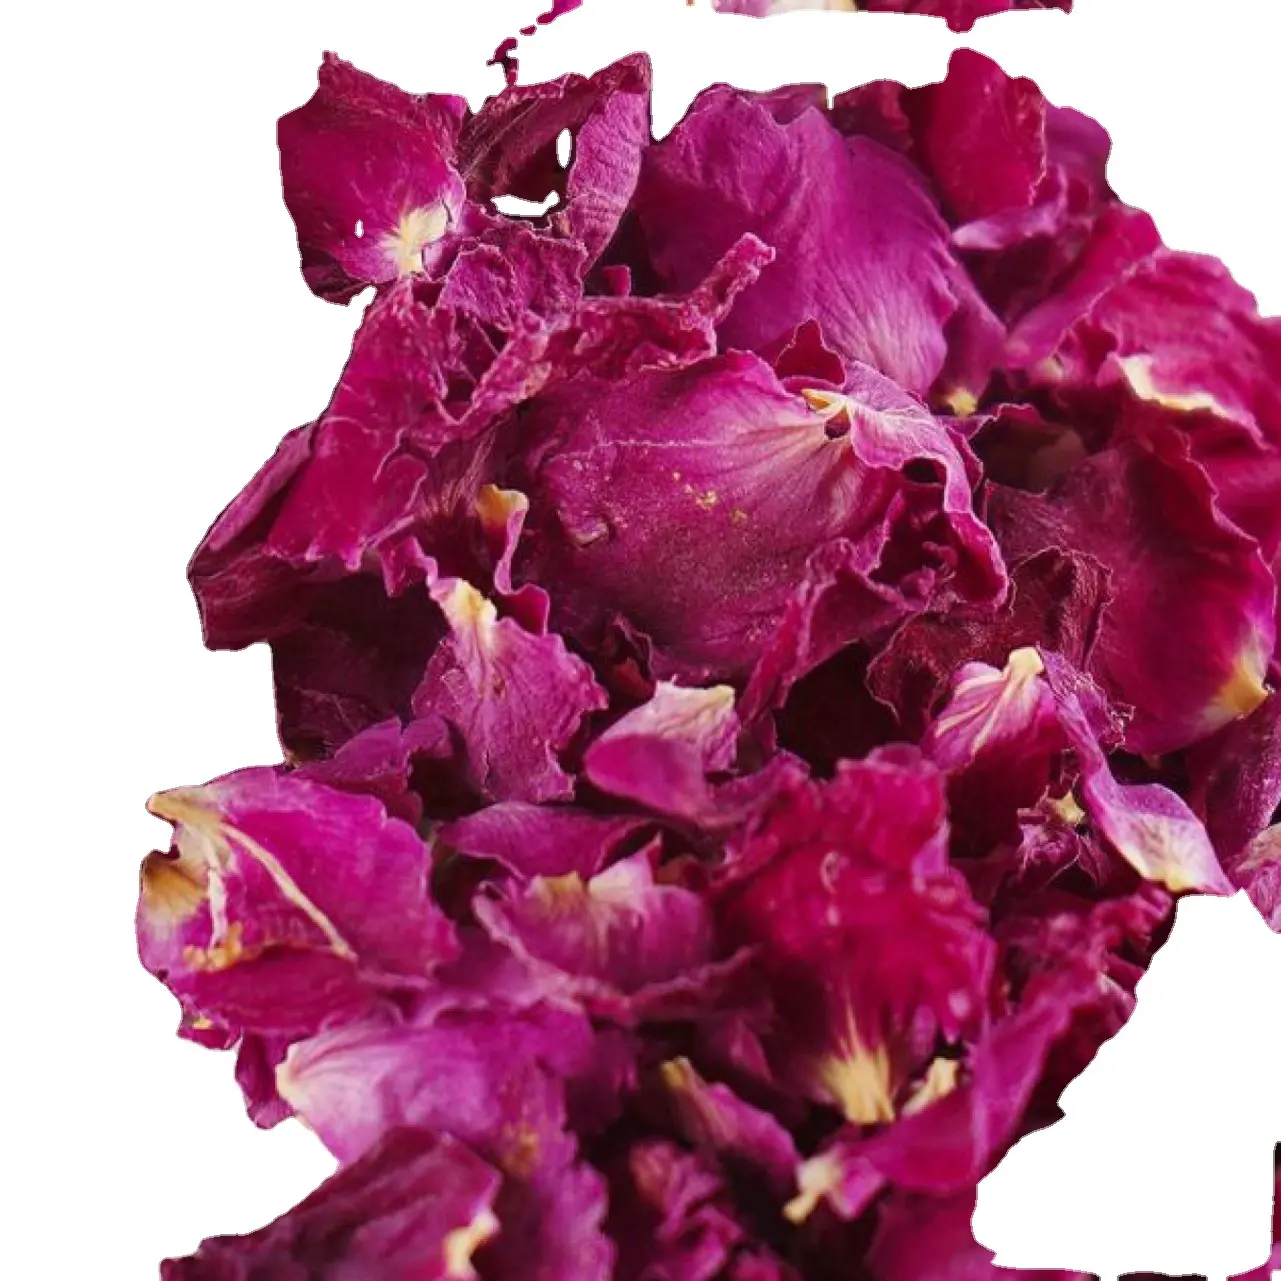 Pabrik grosir sertifikasi organik EU kualitas terbaik kaya selenium mawar kelopak upacara tingkat kecantikan sehat teh mawar kering